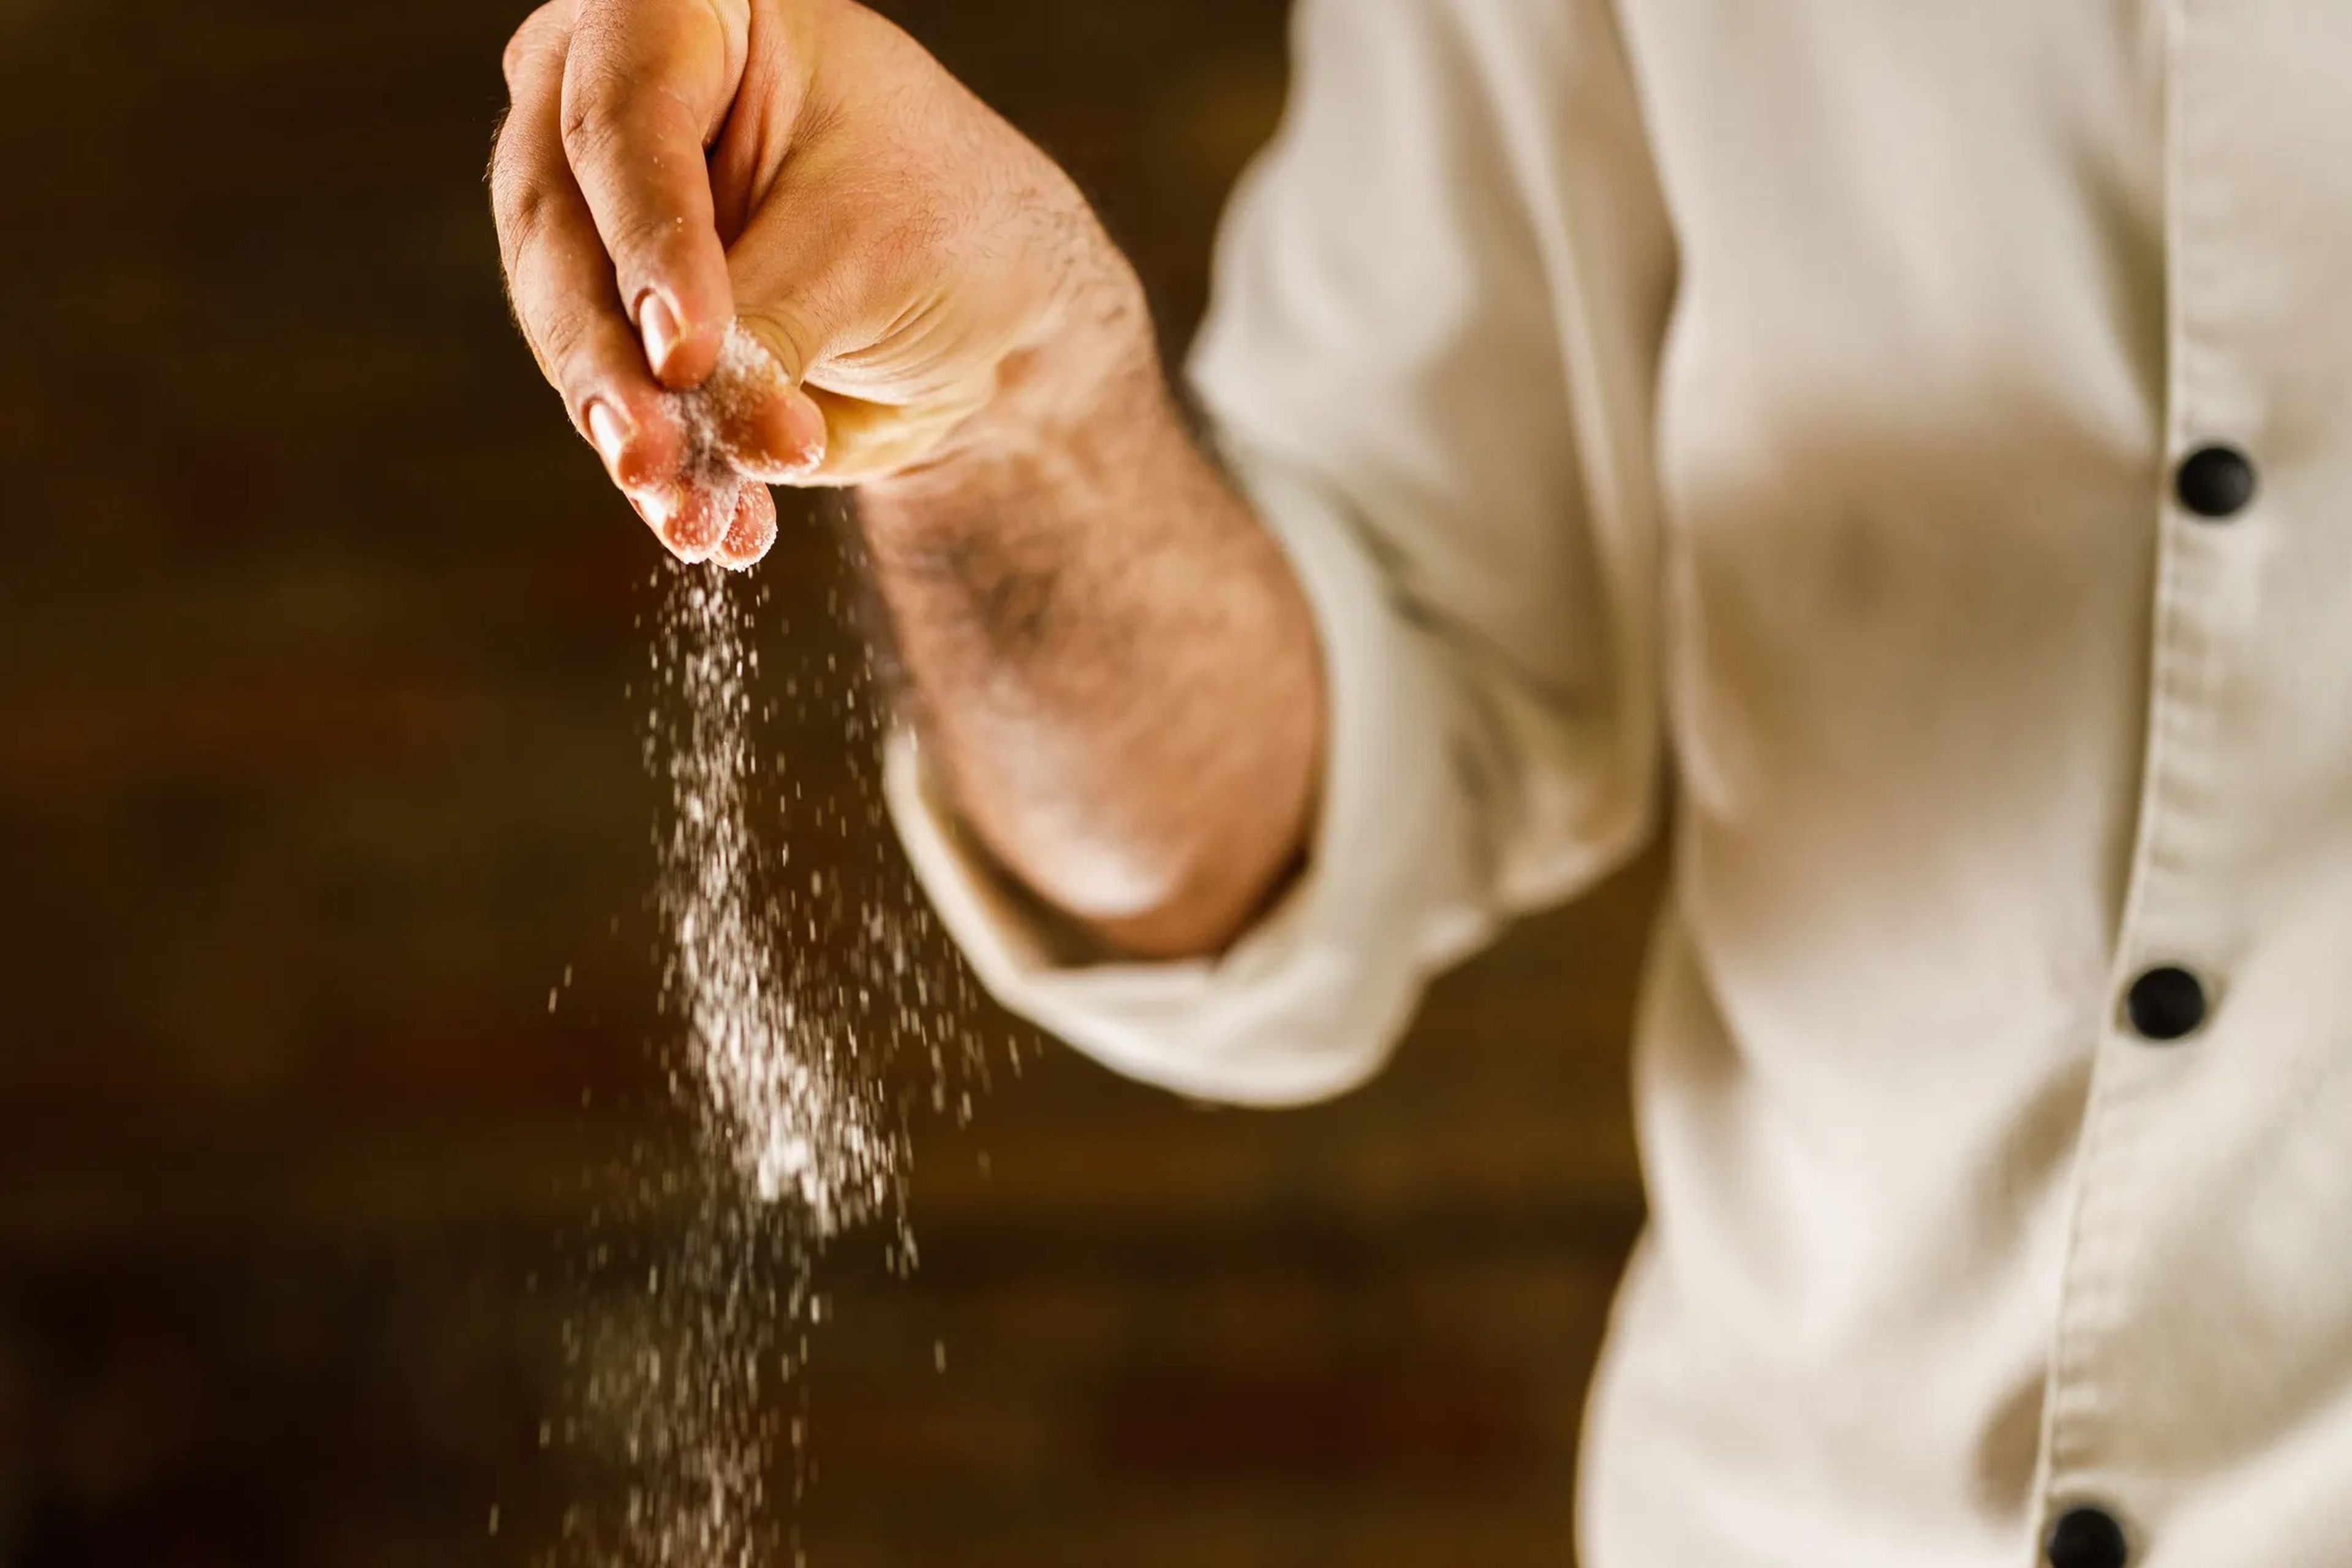 Reducir la sal puede ayudar a bajar la presión arterial.